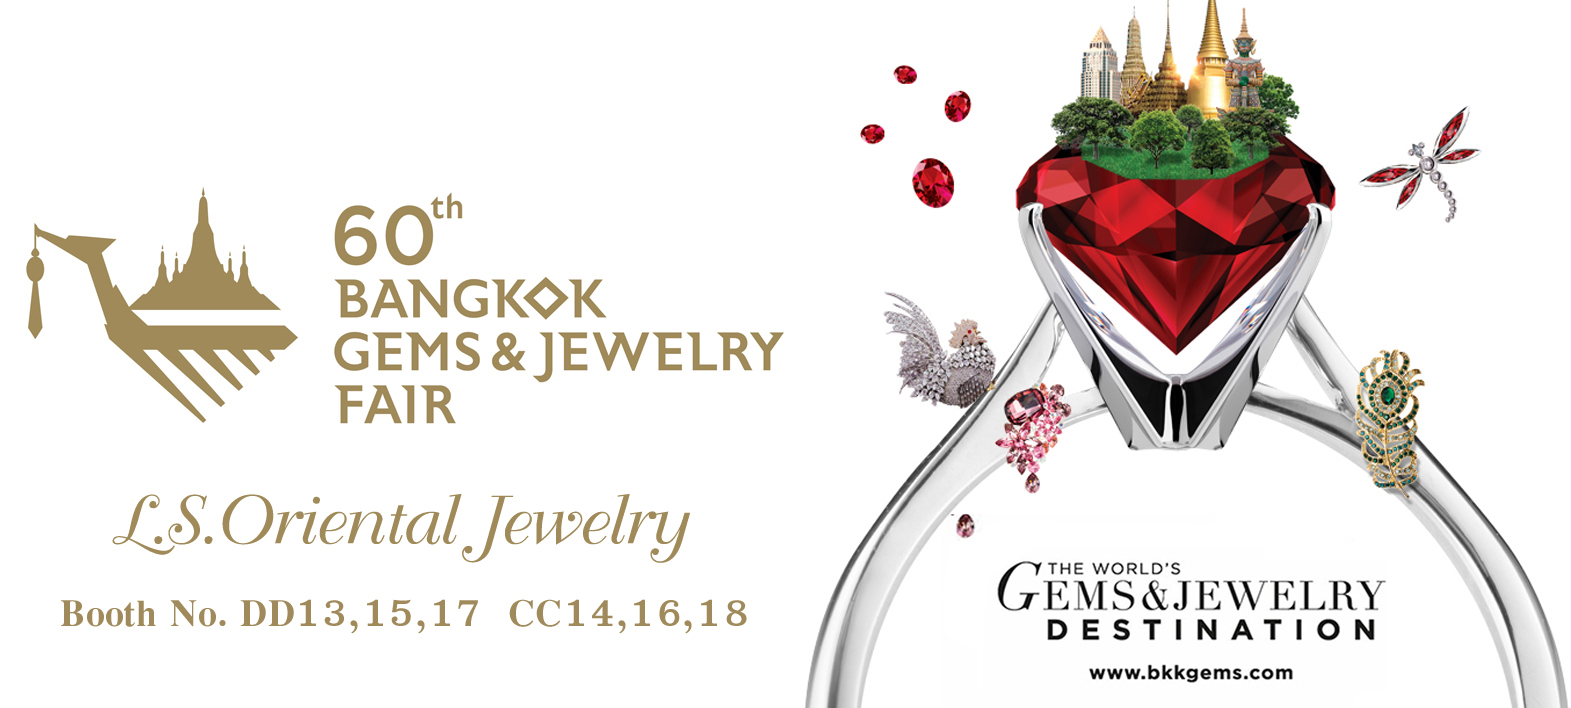 ข่าว Lee Seng Jewelry (L.S. Oriental Jewelry , L.S. Jewelry Group) เข้าร่วมจัดงานแสดงเพชร และอัญมณีที่ใหญ่ที่สุด Bangkok Gems & Jewelry Fair ครั้งที่ 60 ในนิตยสาร Gold & Jewelry Society ฉบับเดือน กันยายน 2560